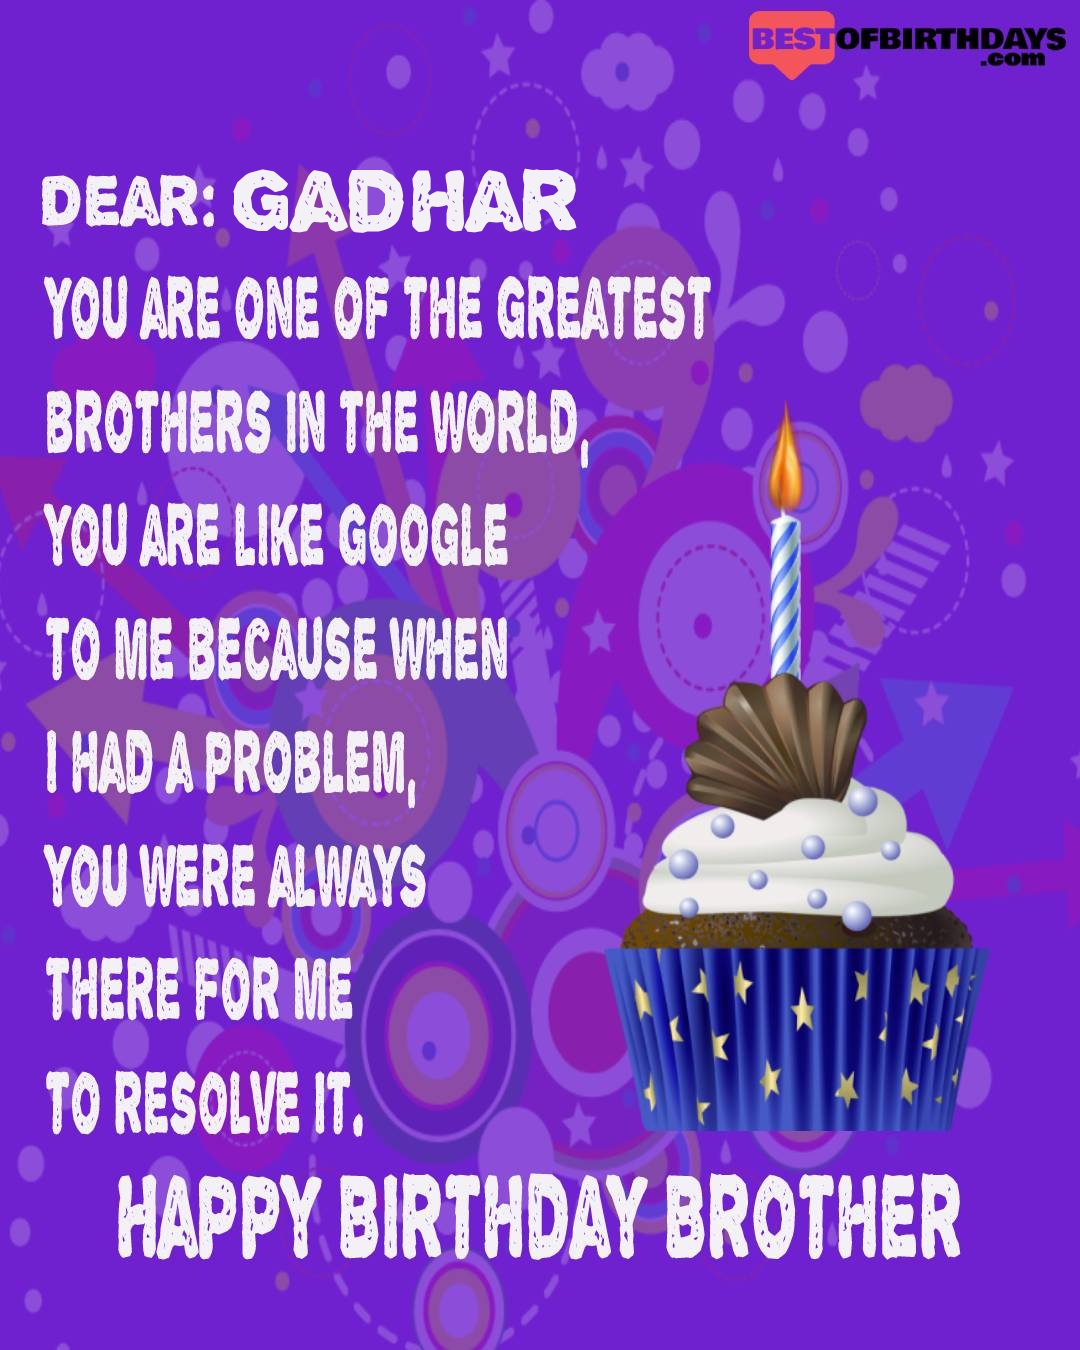 Happy birthday gadhar bhai brother bro